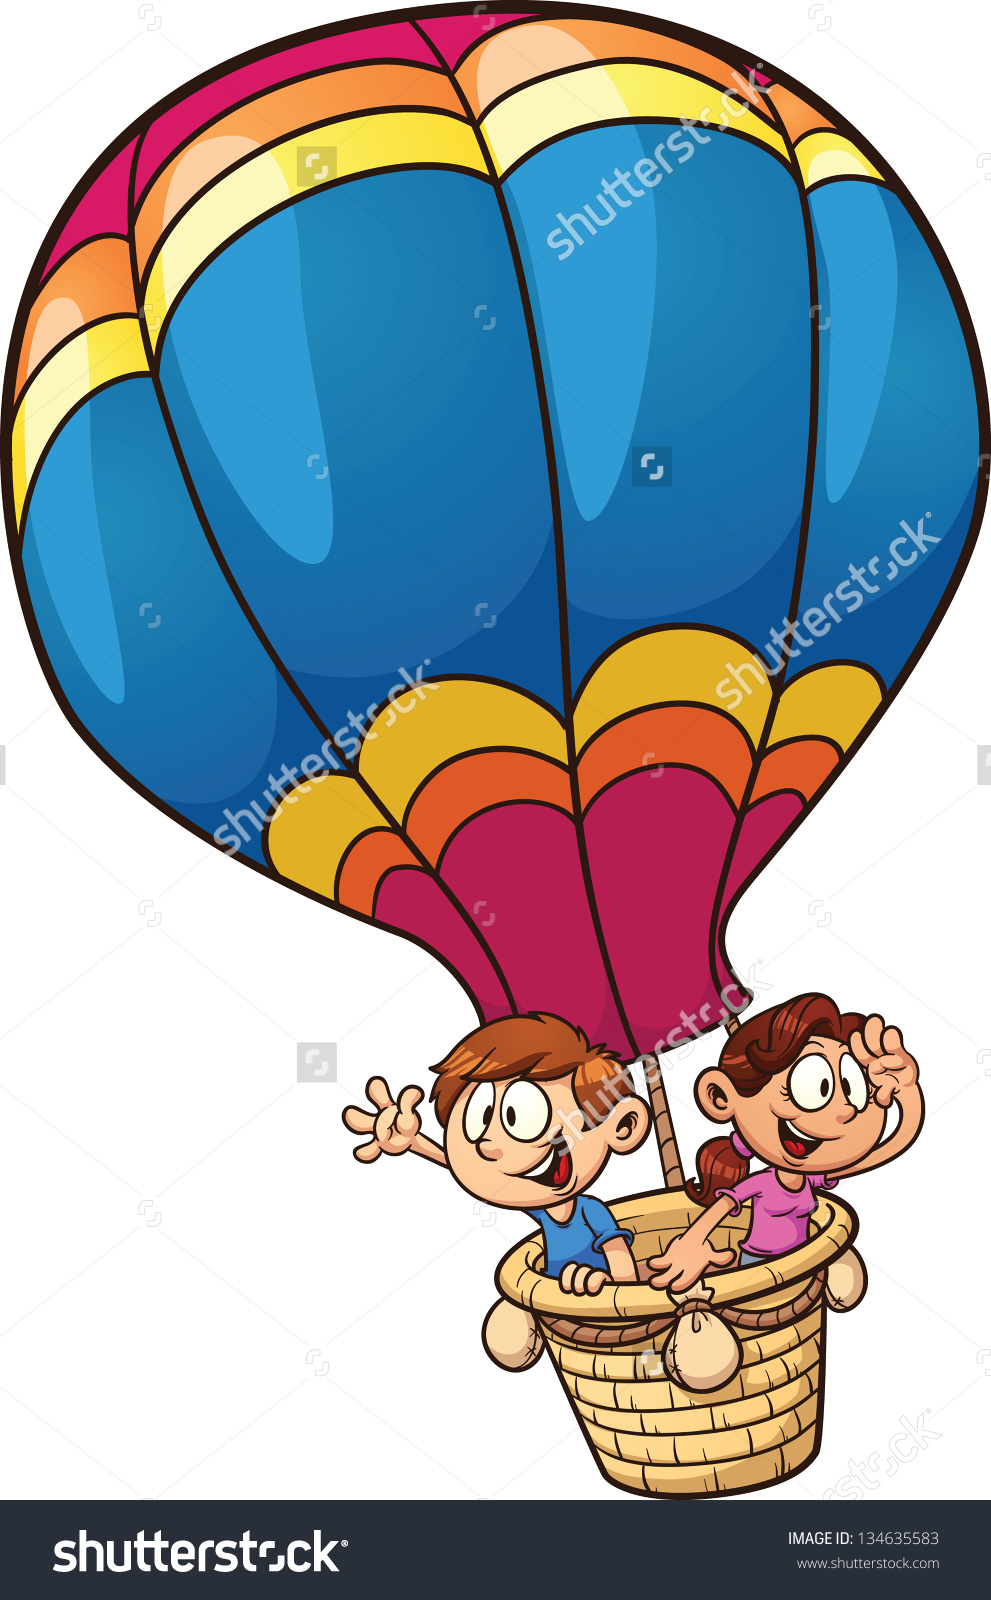 hot air balloon basket clipar